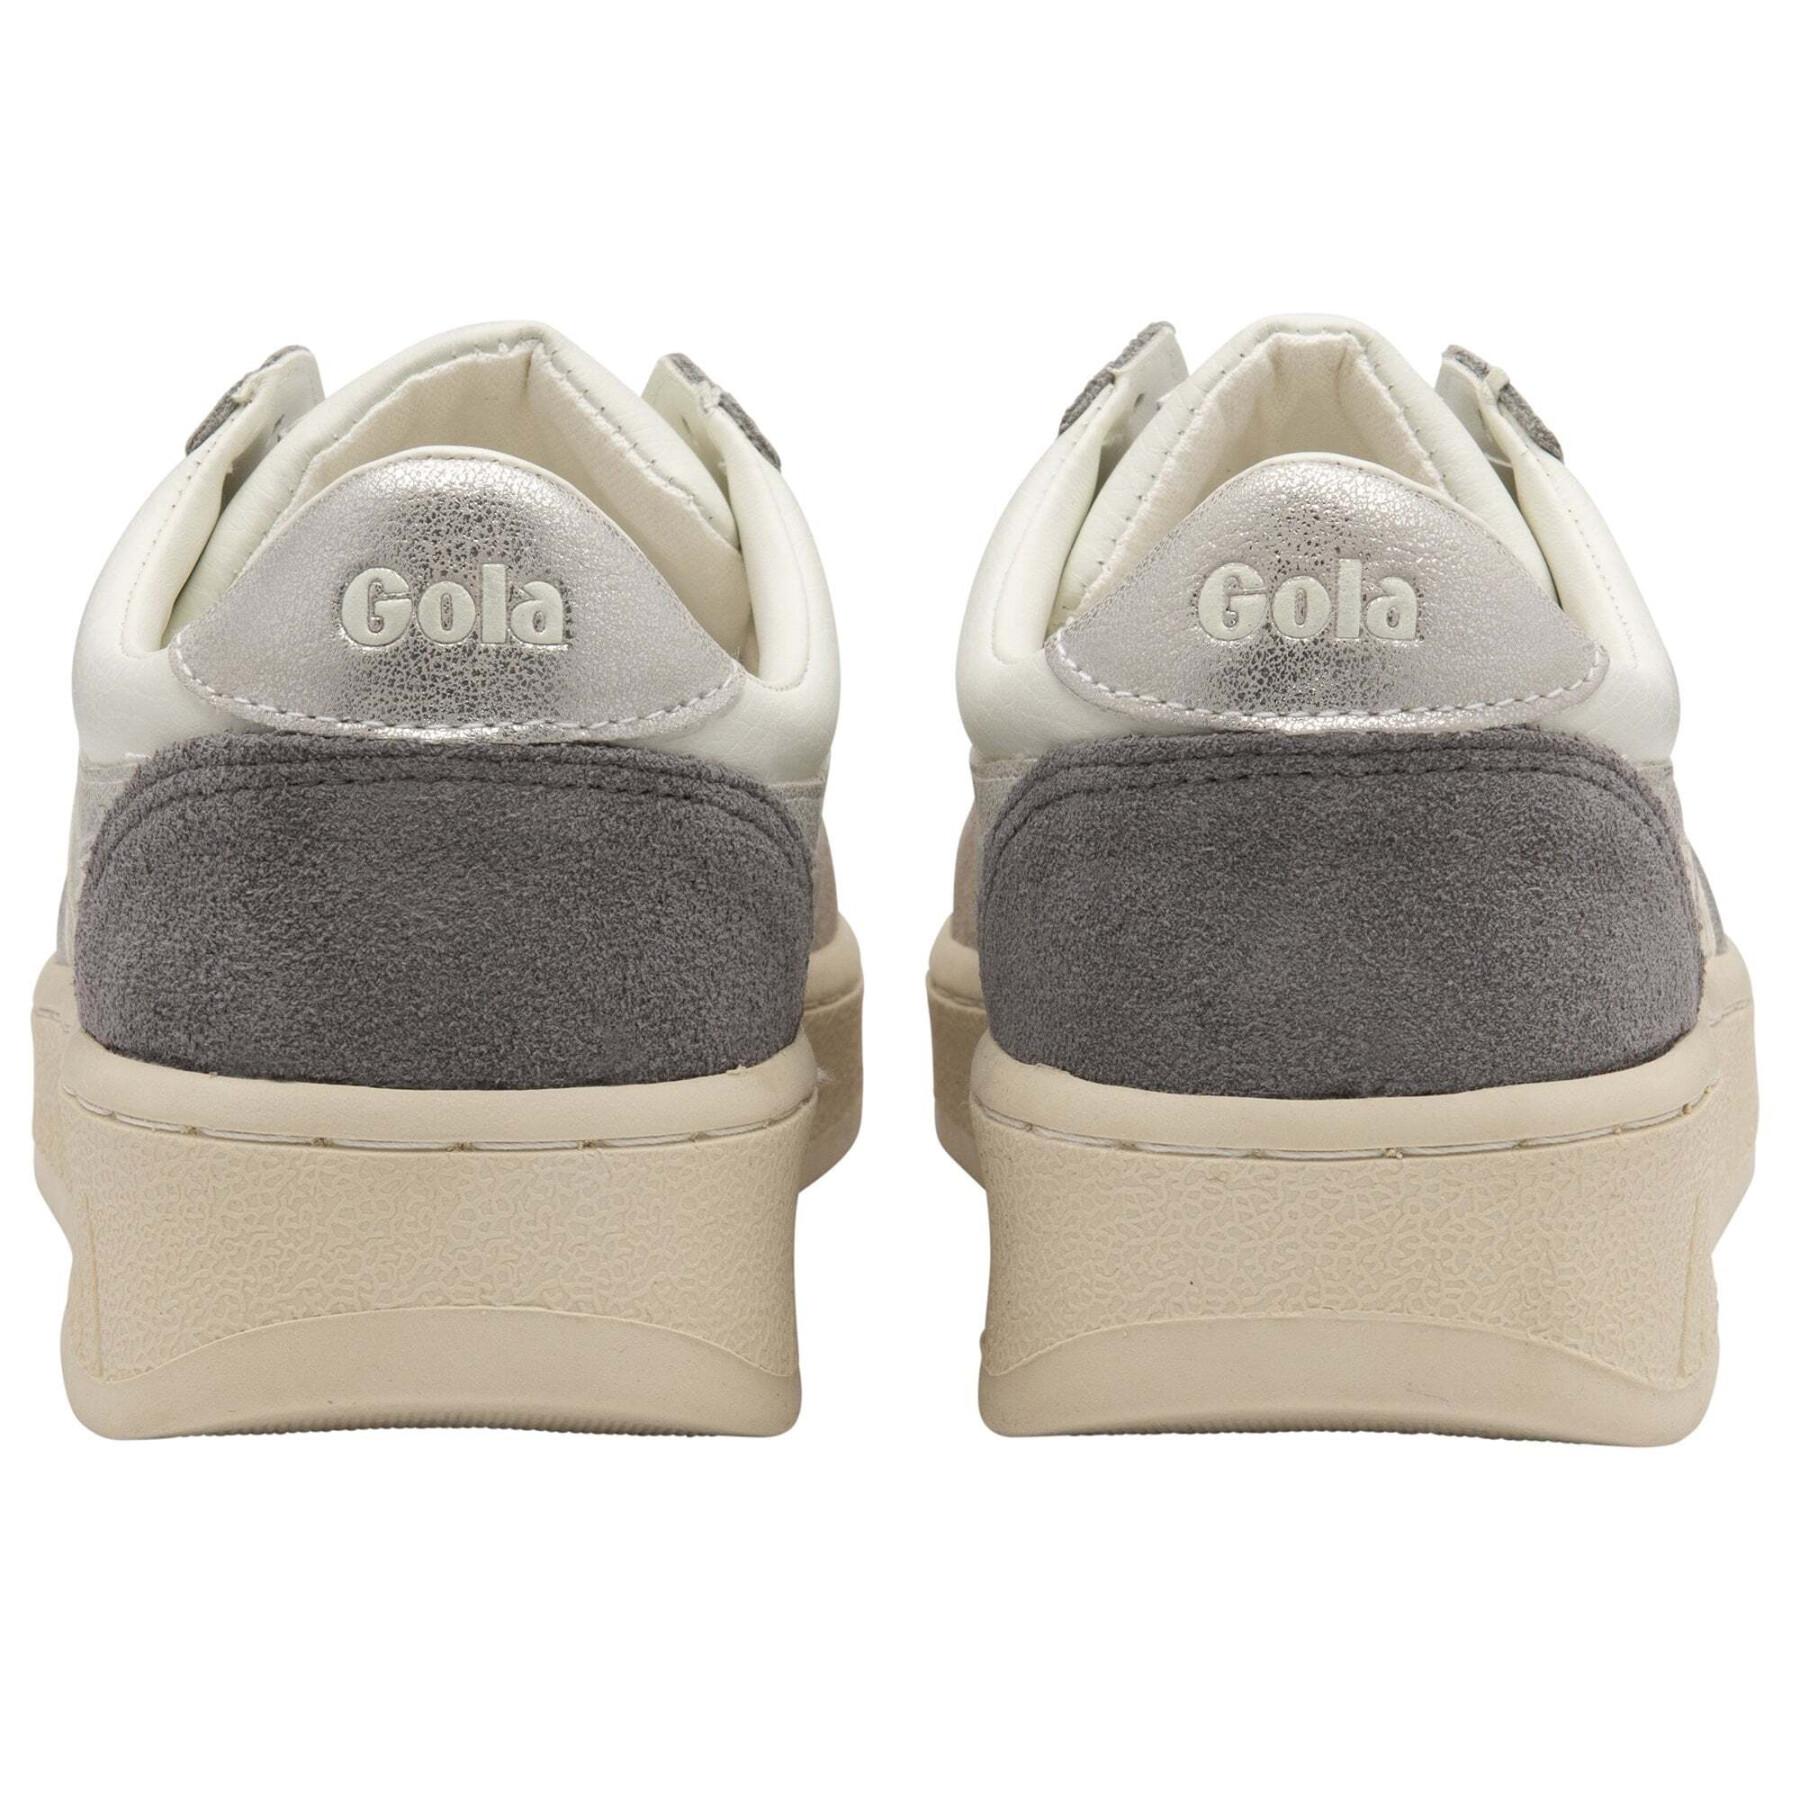 Women's sneakers Gola Grandslam Quadrant